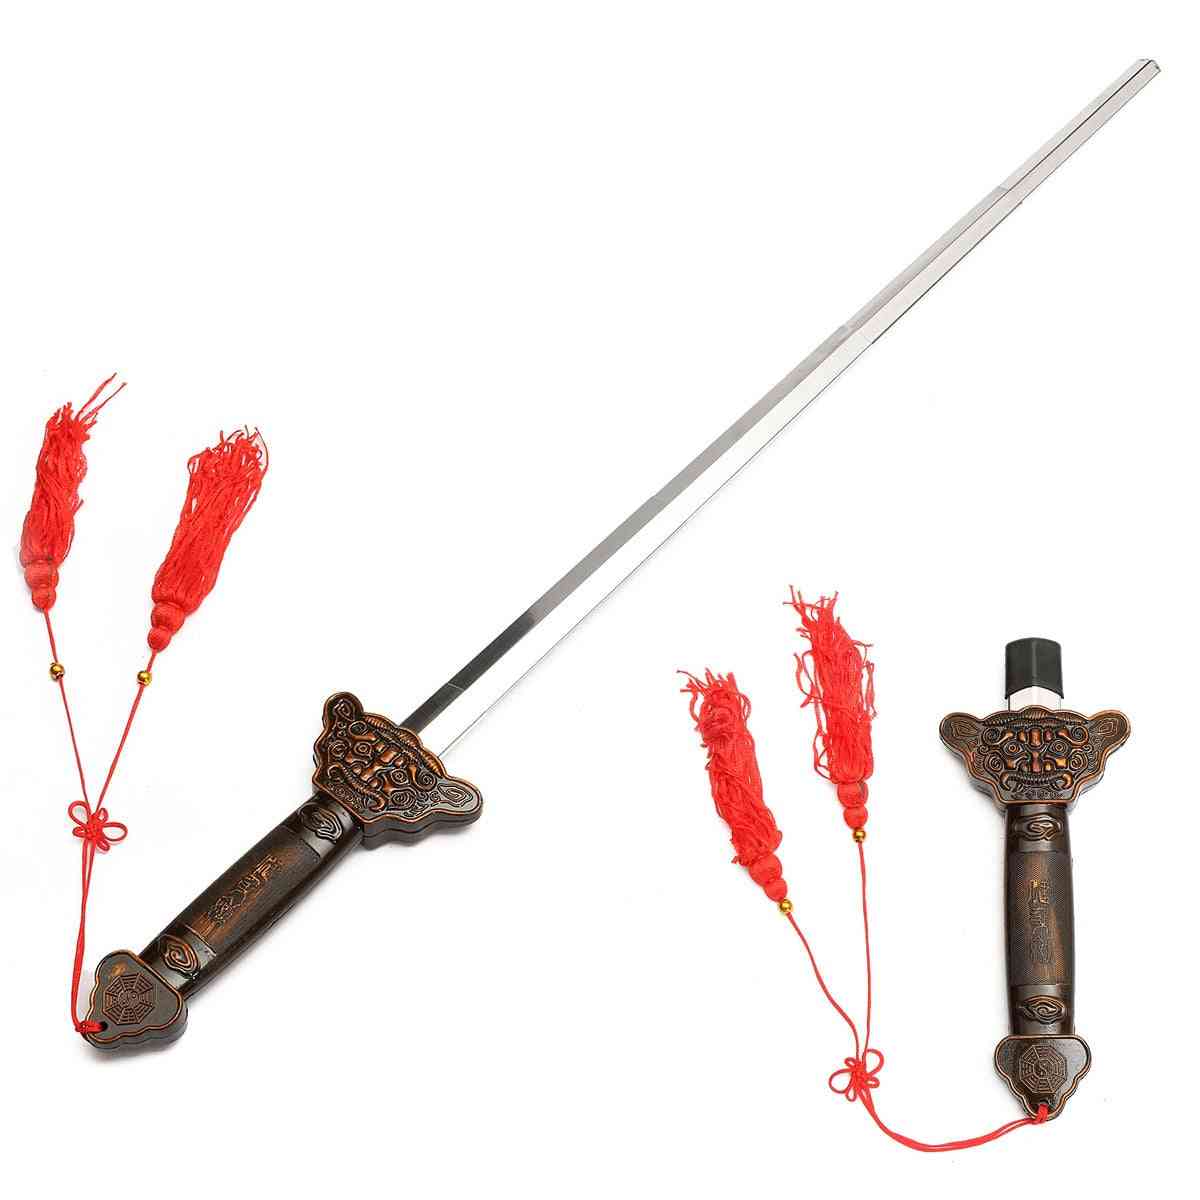 Teleskopiskt kung fu taichi-svärd, sväljningsövning, magiska prestandaträning trick rekvisita